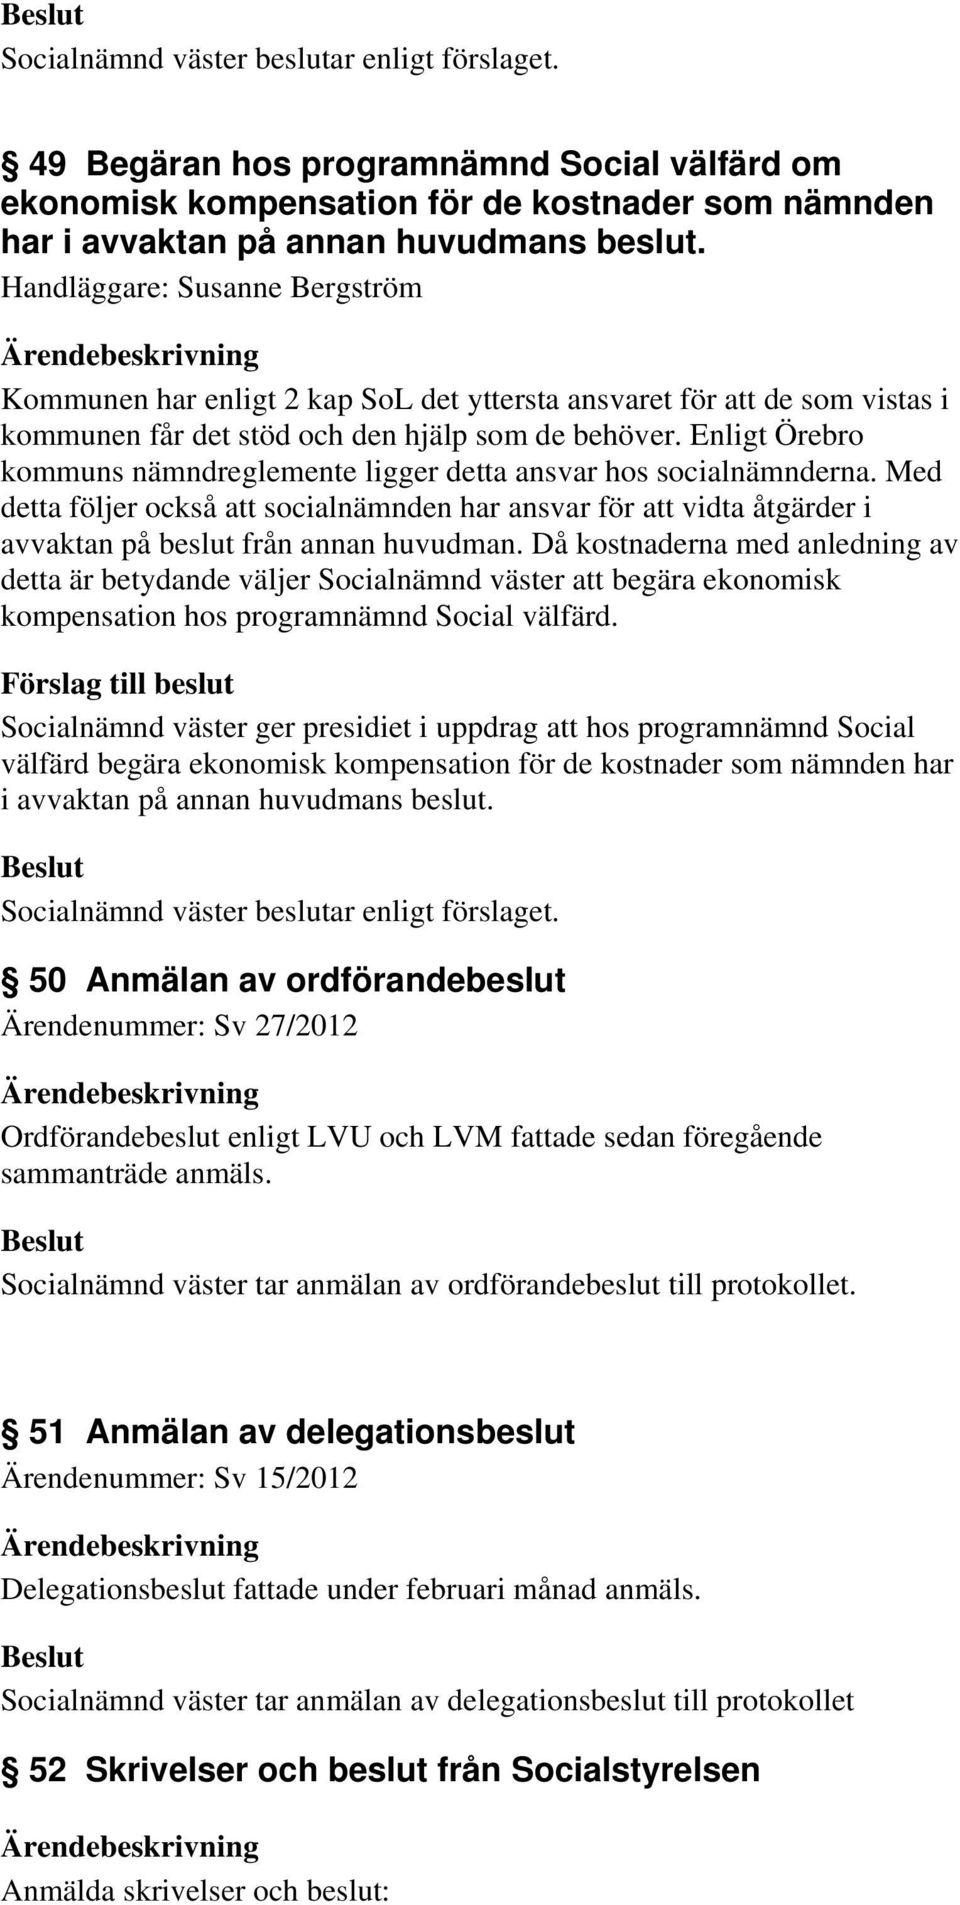 Enligt Örebro kommuns nämndreglemente ligger detta ansvar hos socialnämnderna. Med detta följer också att socialnämnden har ansvar för att vidta åtgärder i avvaktan på beslut från annan huvudman.